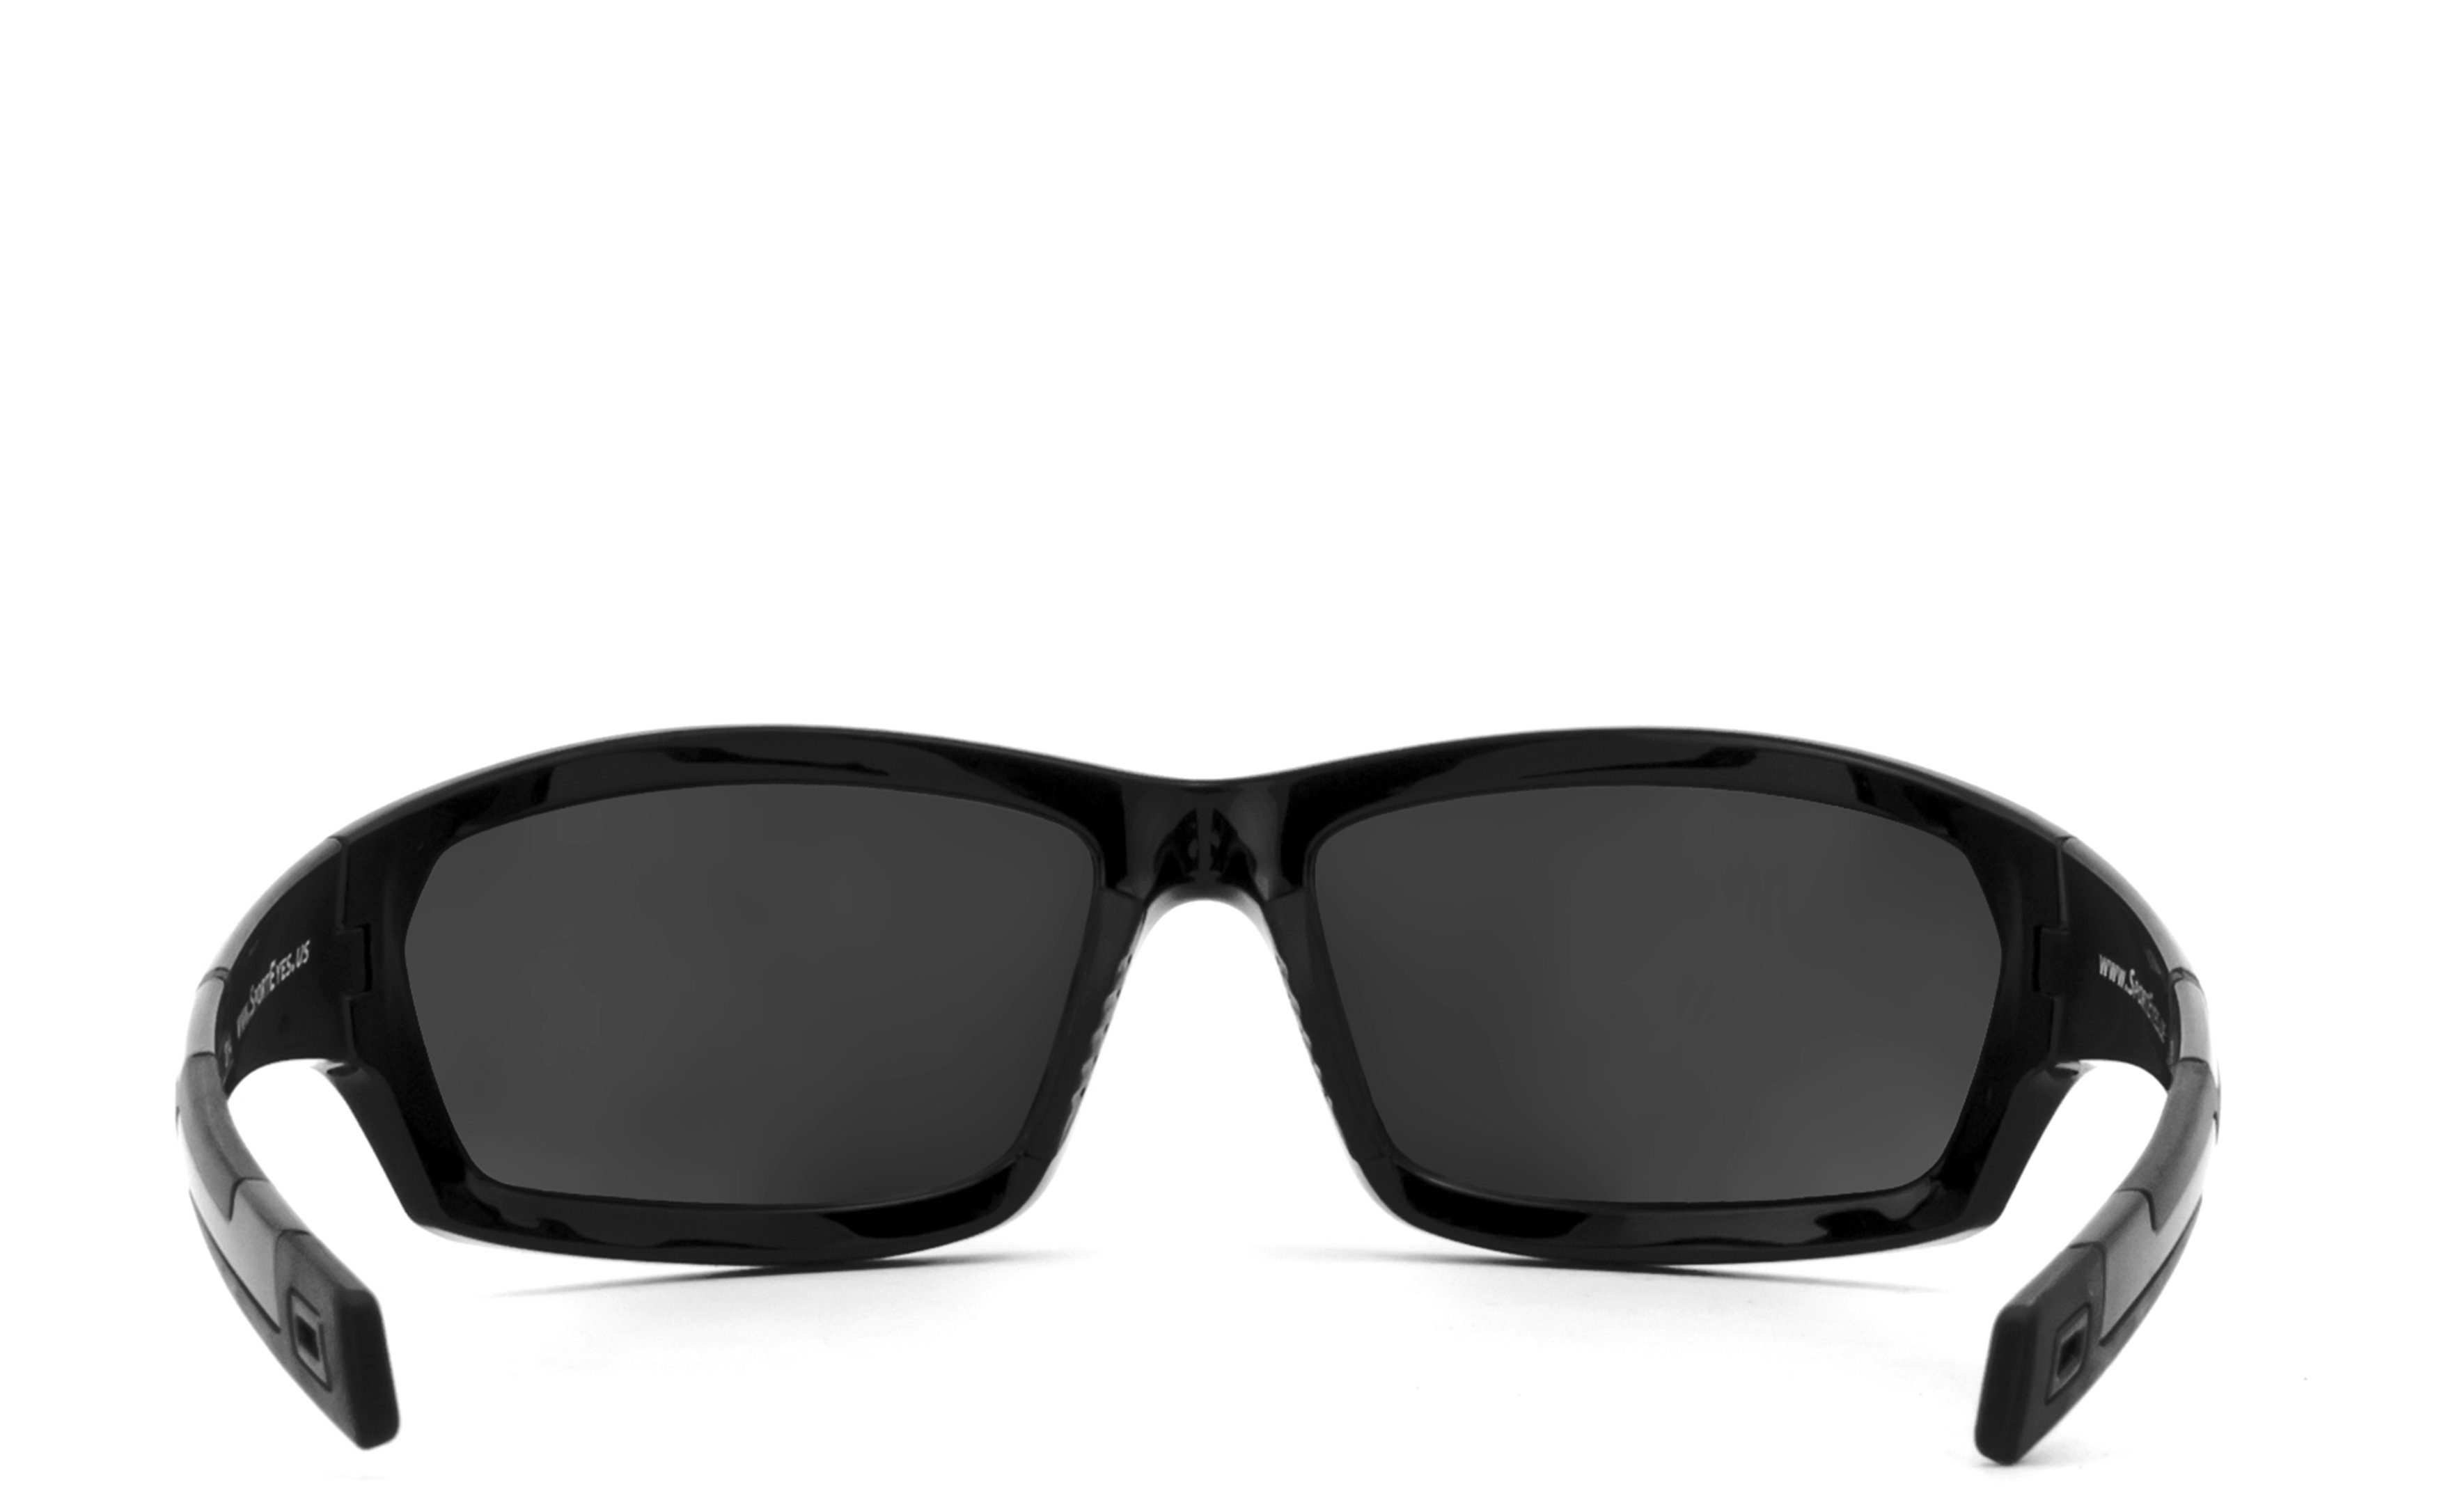 Damen Brillen HSE - SportEyes Sportbrille AIR-STREAM, Steinschlagbeständig durch Kunststoff-Sicherheitsglas